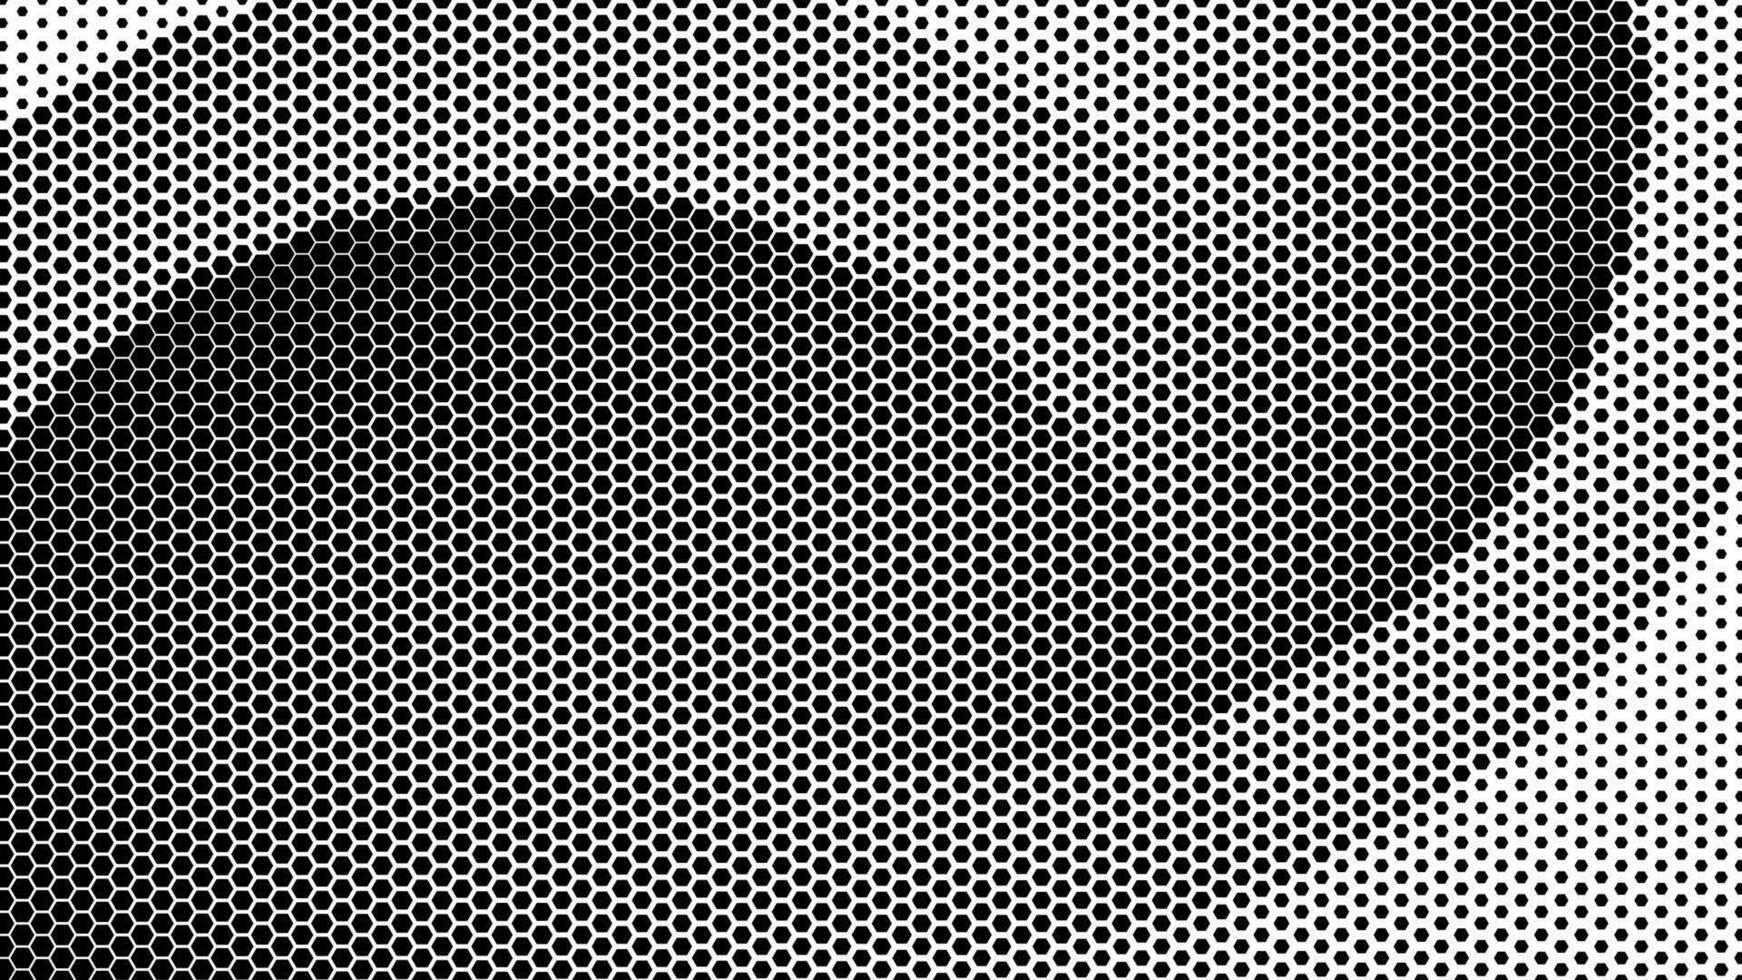 zeshoekig meetkundig Golf achtergrond. halftone zeshoek vormen technologie achtergrond. abstract meetkundig golvend patroon. zeshoek schaduw helling met zeshoekig patroon. vector illustratie.